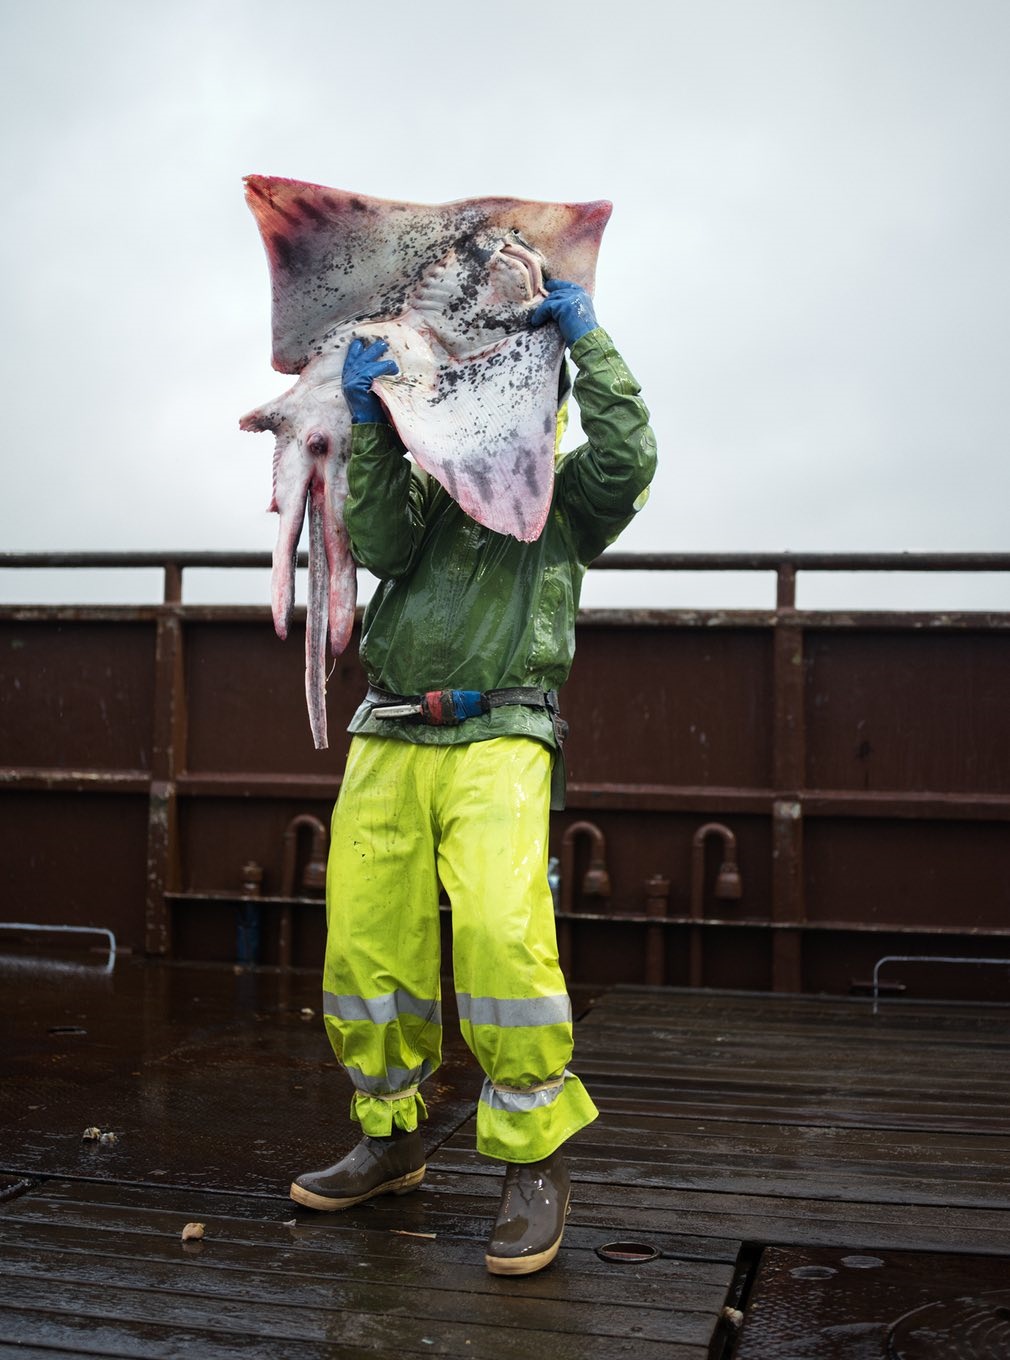 تصاویر | زندگی در آلاسکا از نگاه یک ماهیگیر